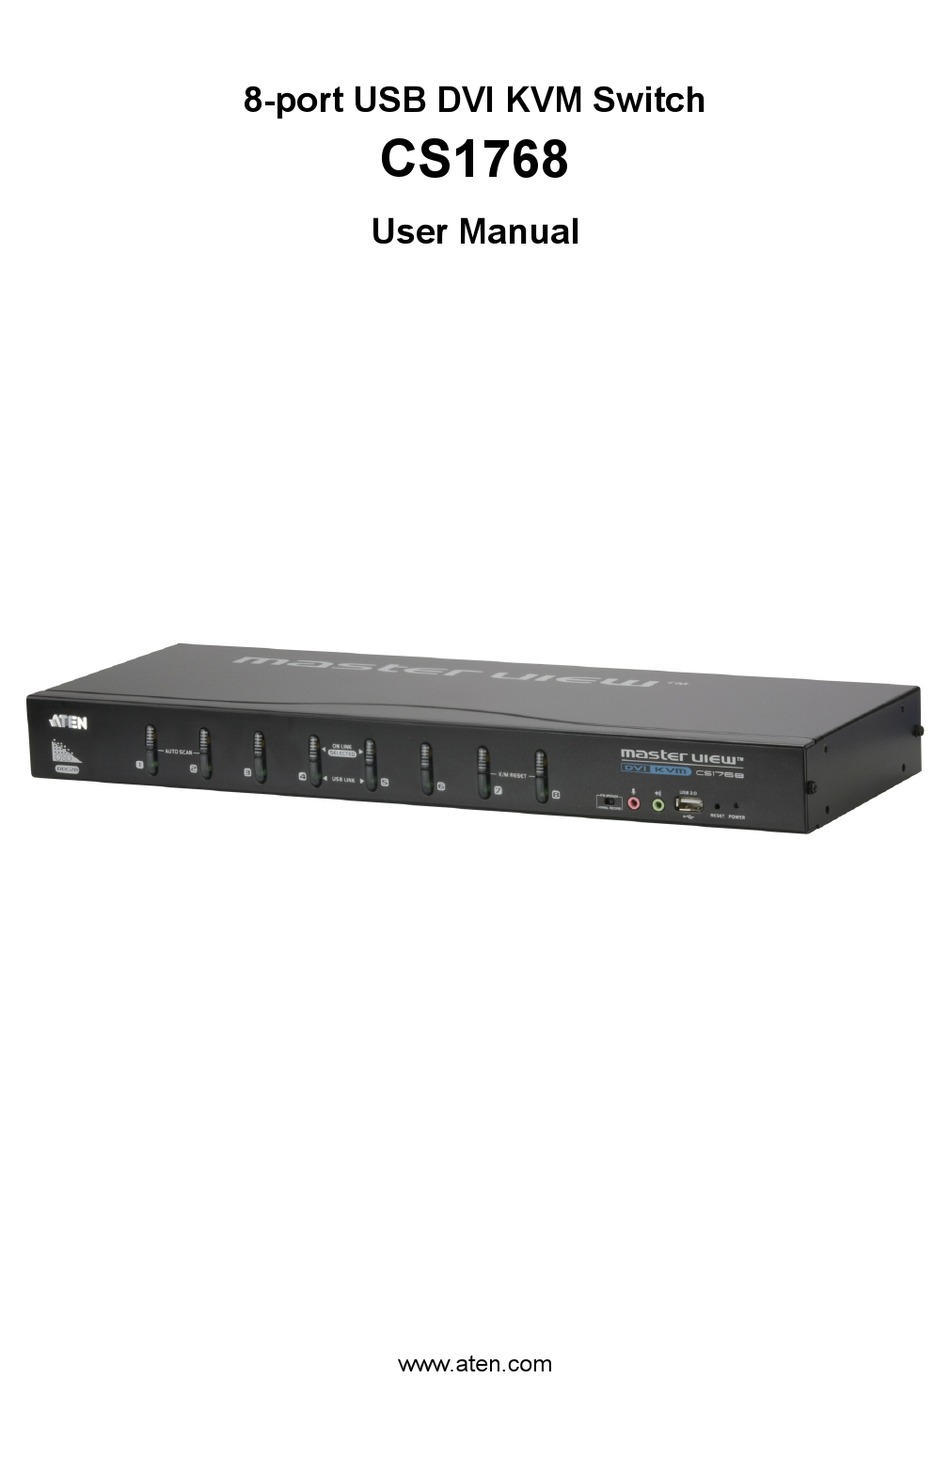 激安通販専門店 ATEN エーテン KVMスイッチ 8ポート DVI USB デュアルリンク